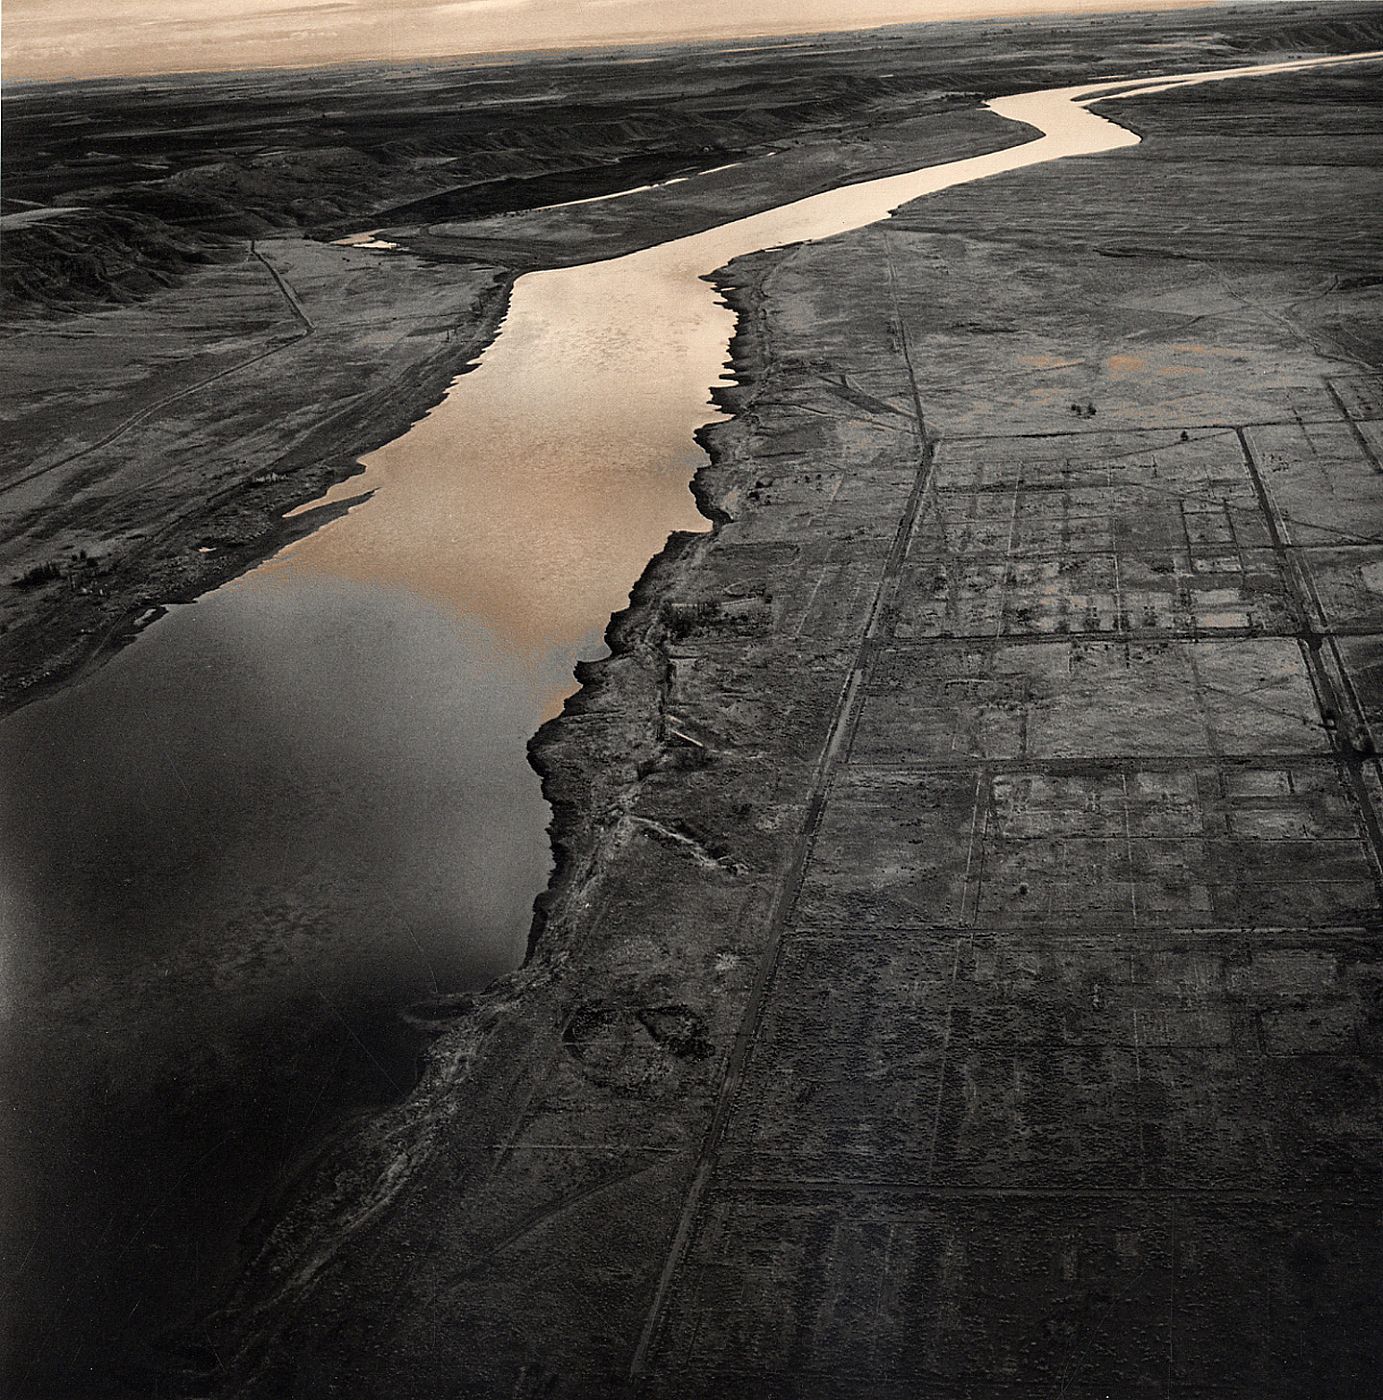 Emmet Gowin: Photographs (Philadelphia Museum of Art)